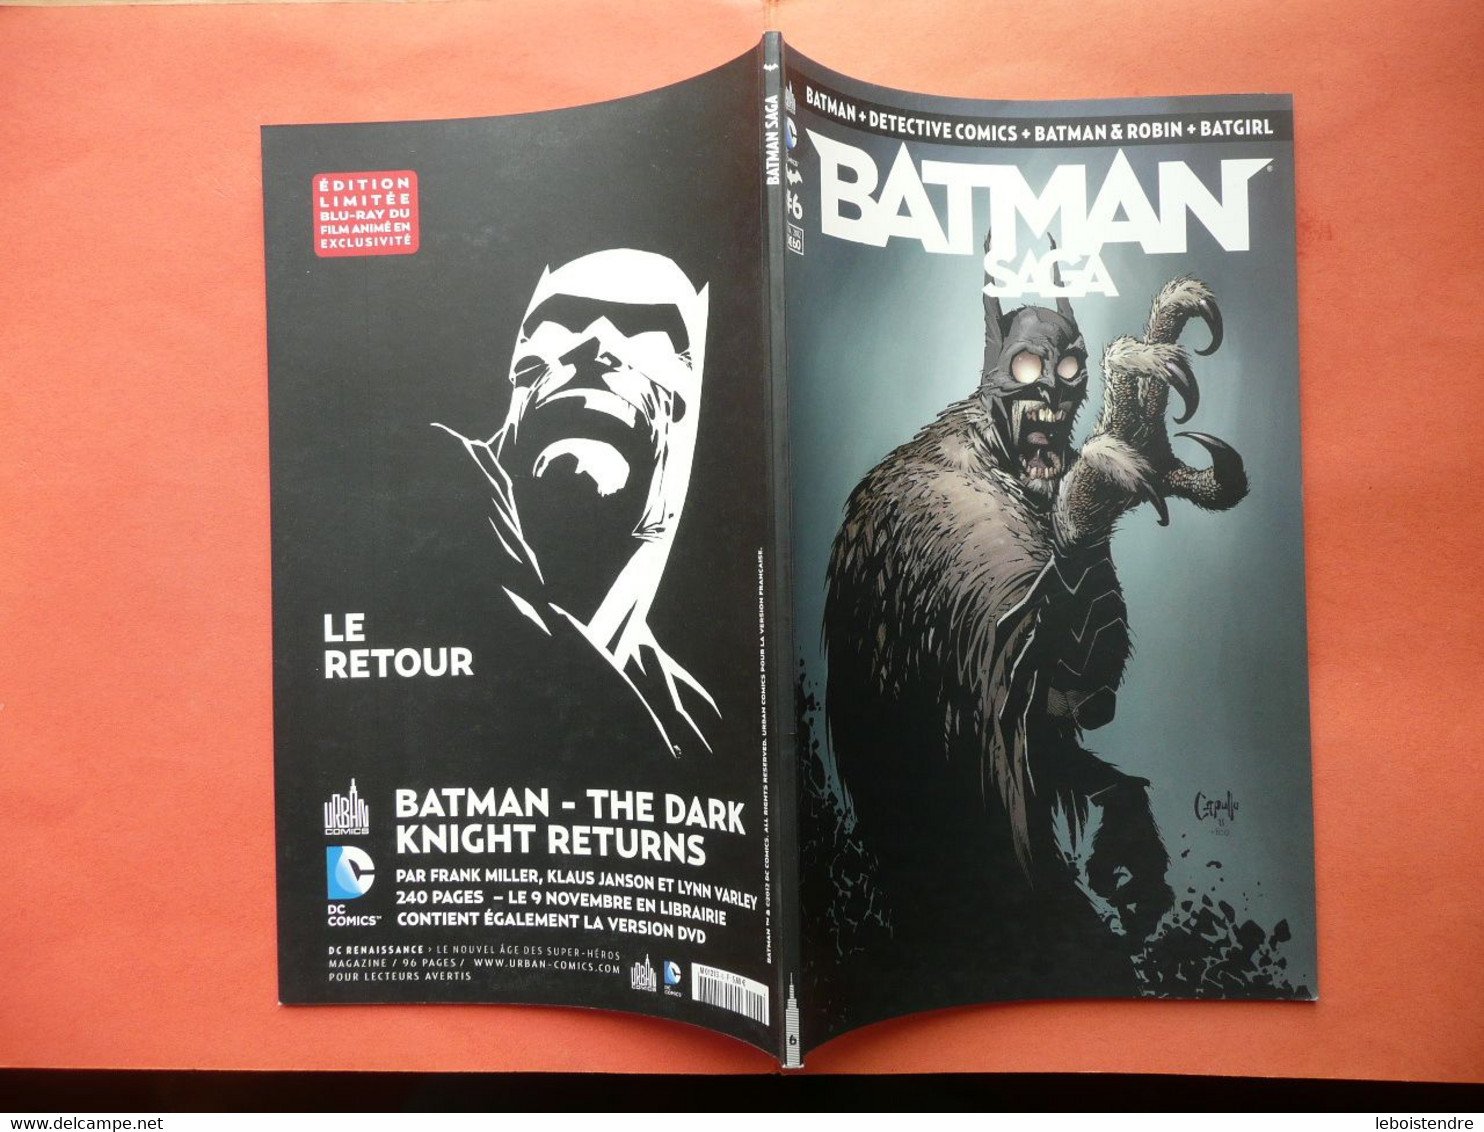 BATMAN SAGA N 6 NOVEMBRE 2012 BATGIRL DETECTIVE COMICS 4 ROBIN CATWOMAN URBAN COMICS DC COMICS TBE - Batman